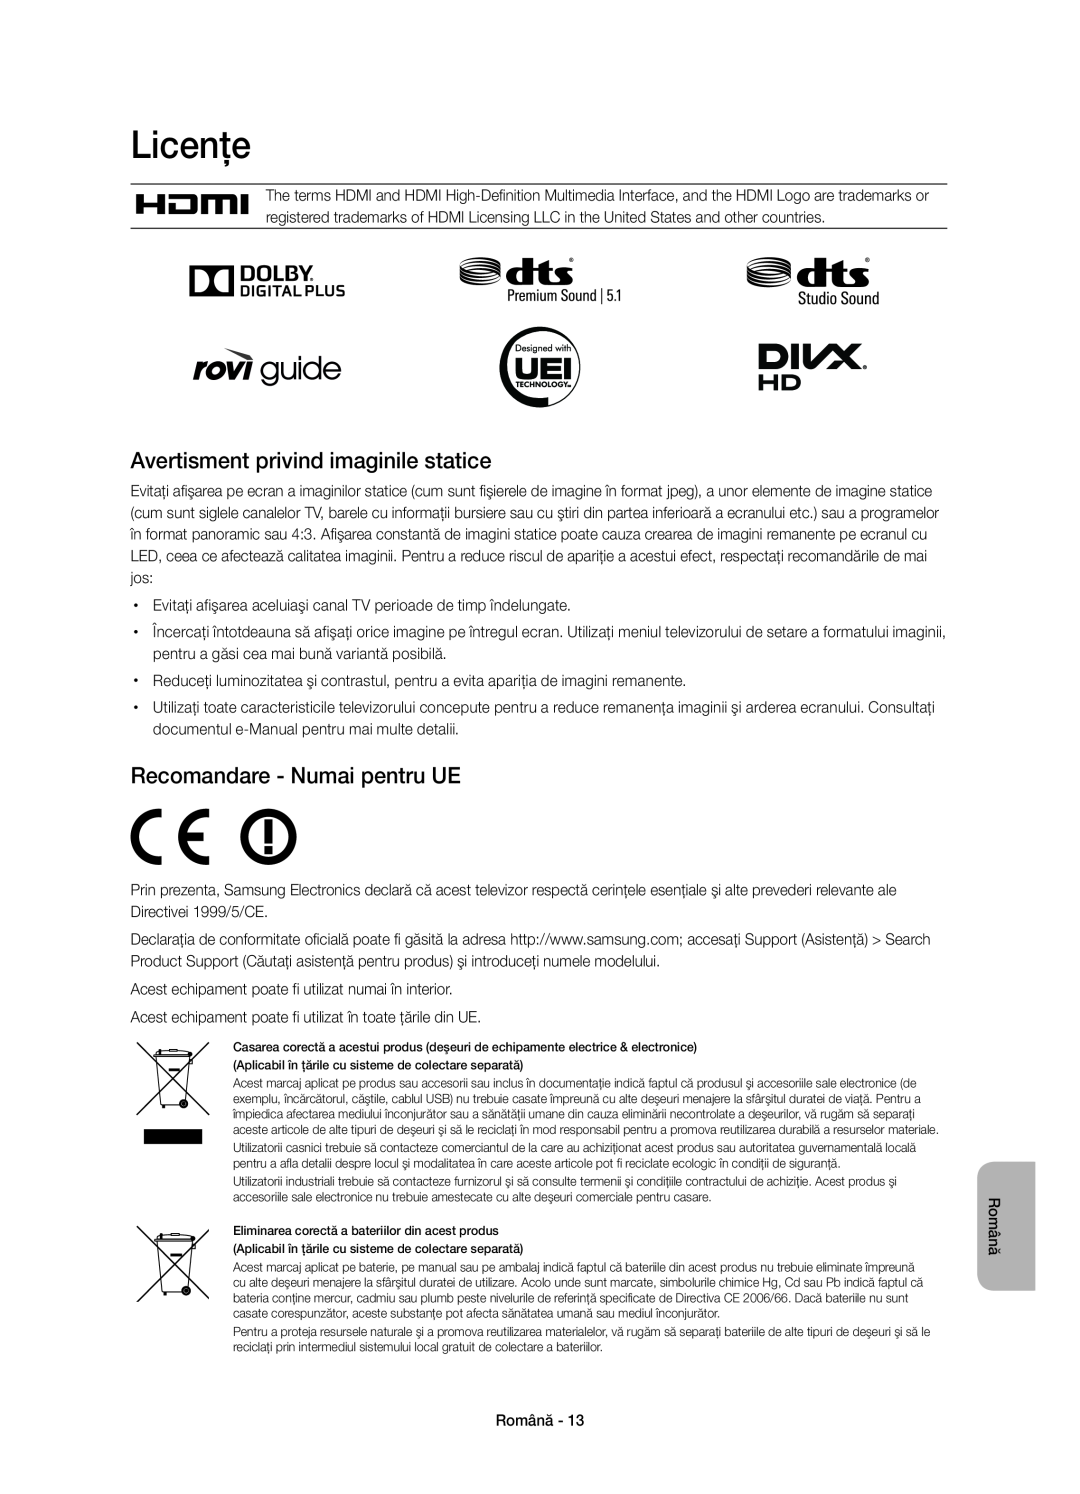 Samsung UE48H6410SUXXU manual Licenţe, Avertisment privind imaginile statice, Recomandare - Numai pentru UE, Română 